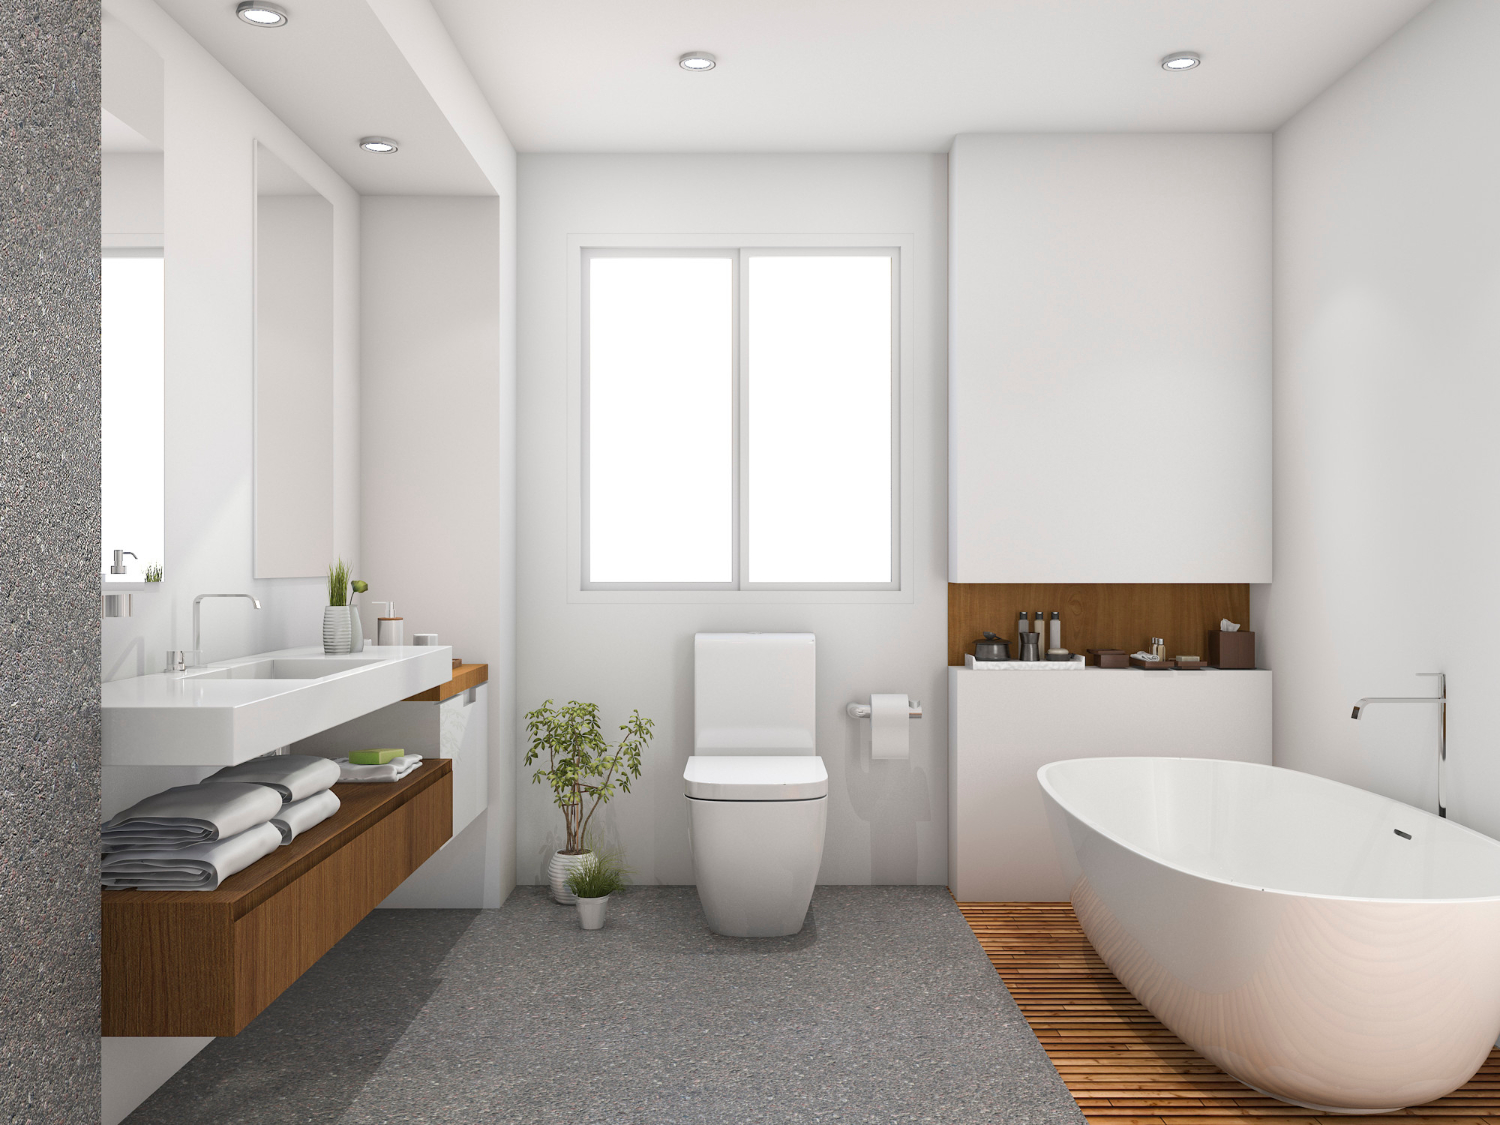 Membedakan material lantai sebagai batasan area imajiner dapat membuat kamar mandi terasa lebih luas.